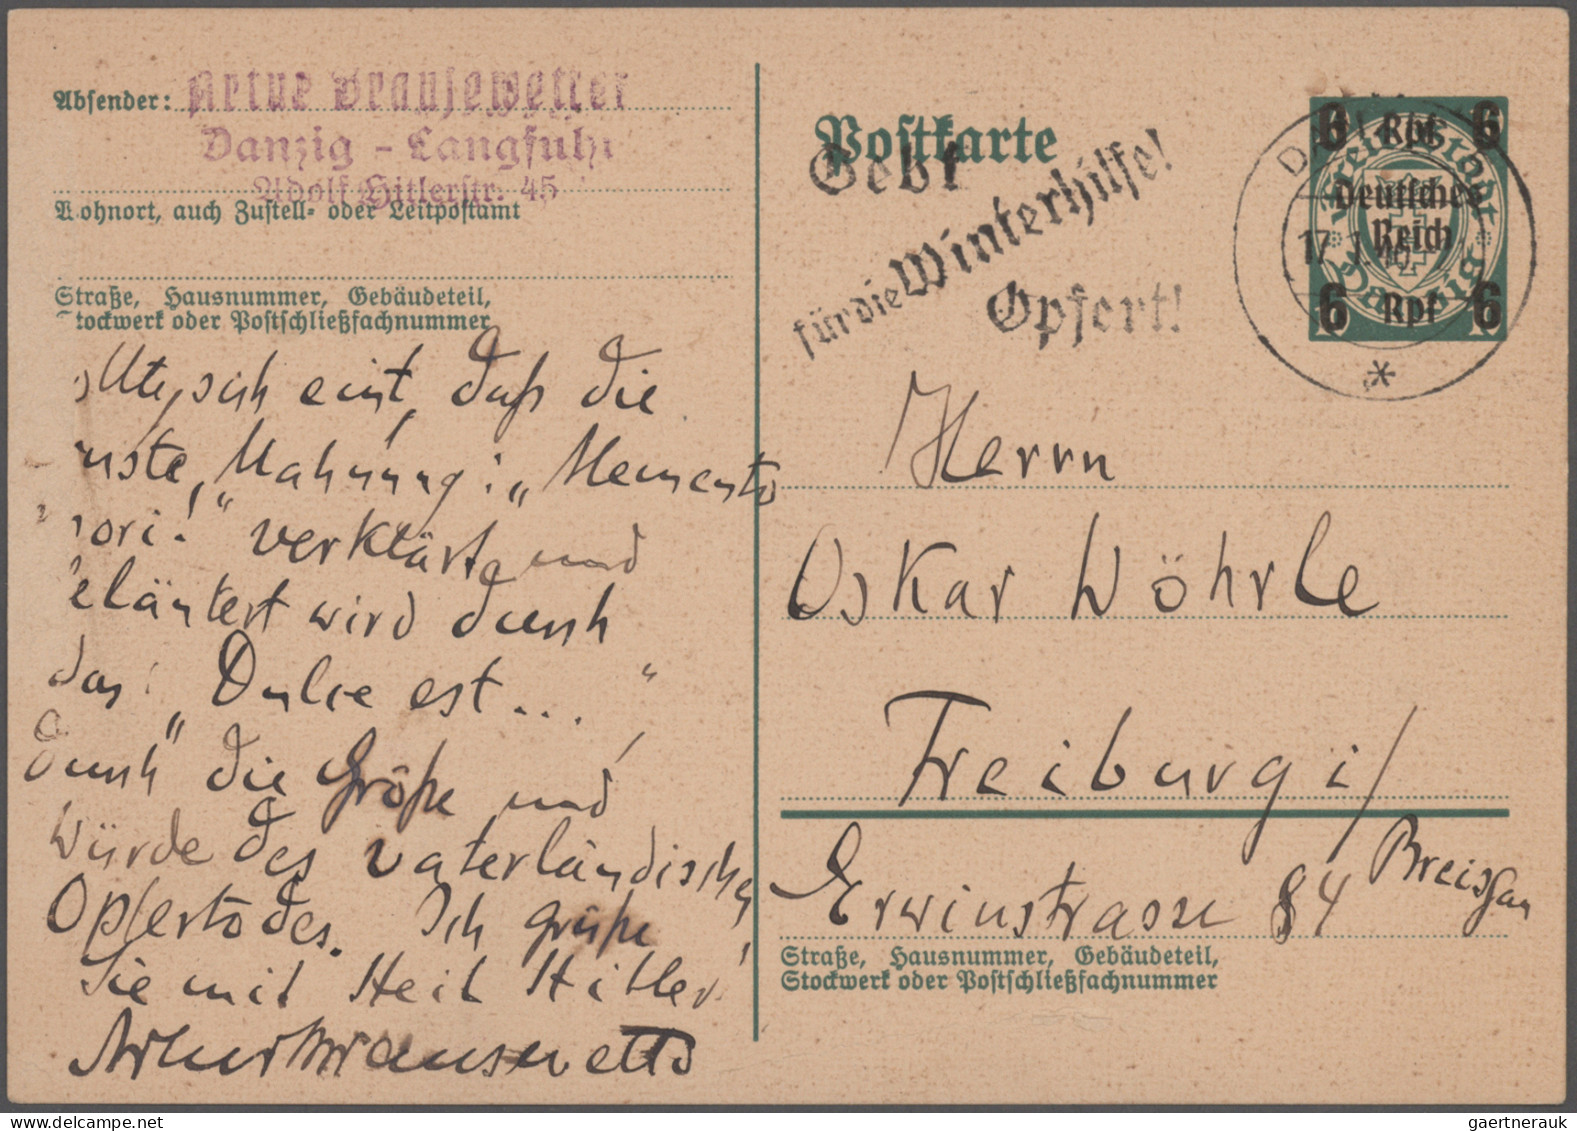 Thematics: Printing-writers, Authors: 1914/1943 (ca.), Bestand Von Einigen Hunde - Writers